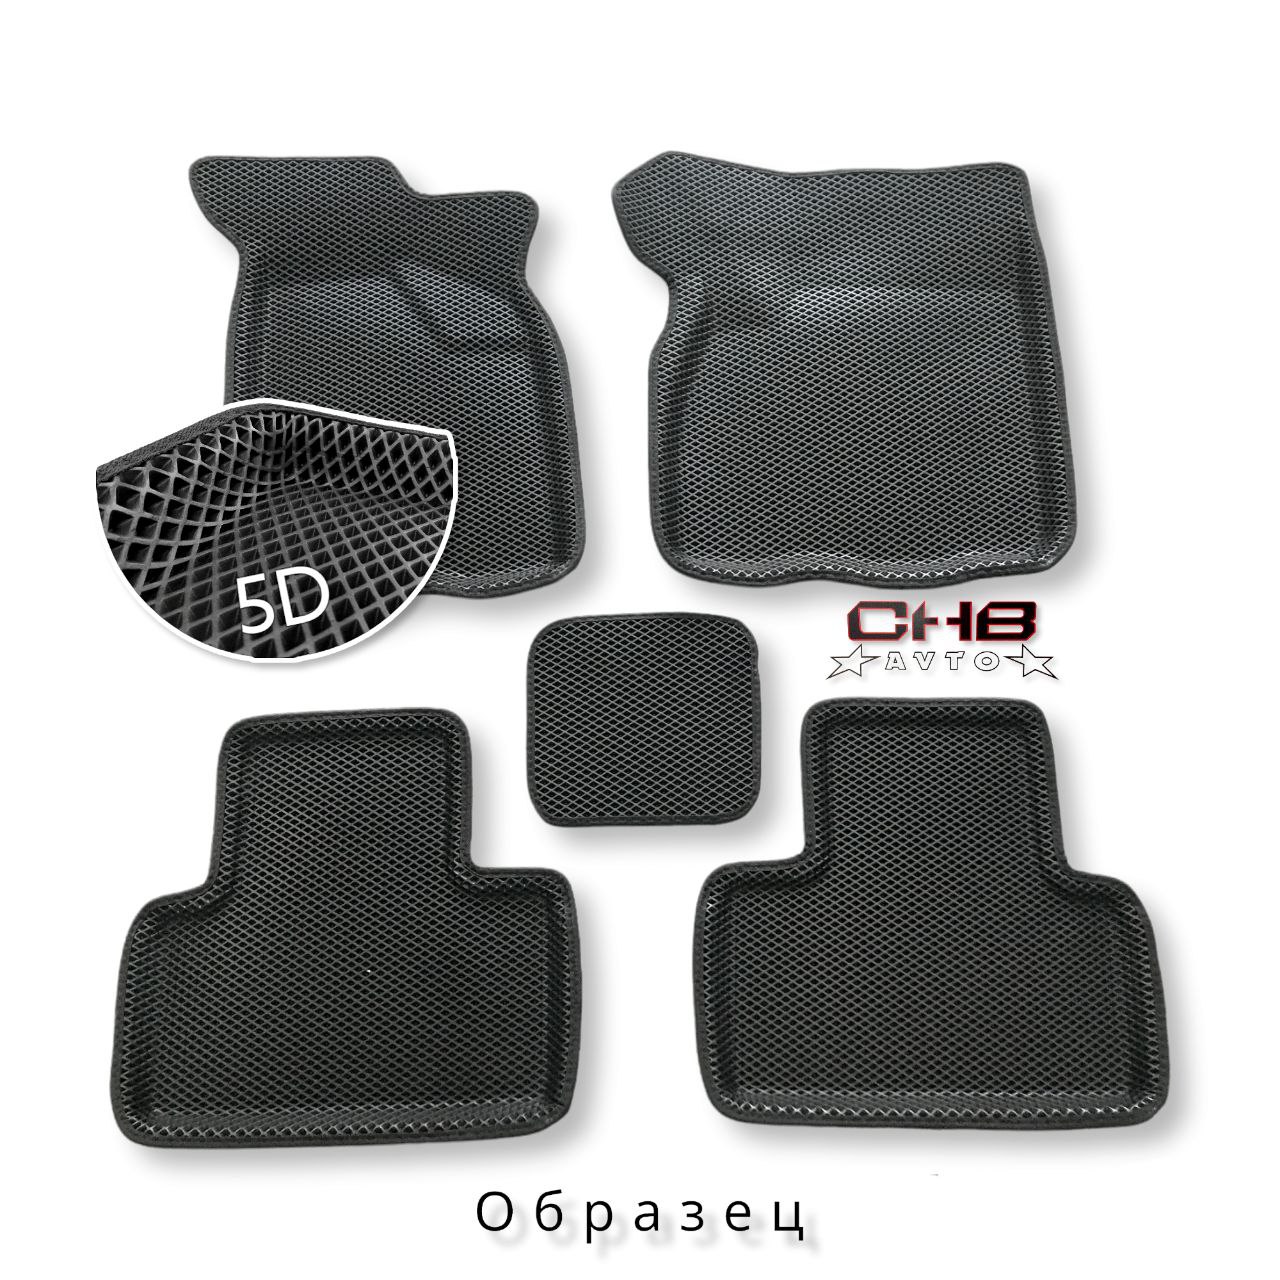 (ЕВА) Комплект полимерных 5D НАНО ковриков на VW Polo 2020->/Skoda Rapid I,II, цвет ЧЁРНЫЙ/чёрный